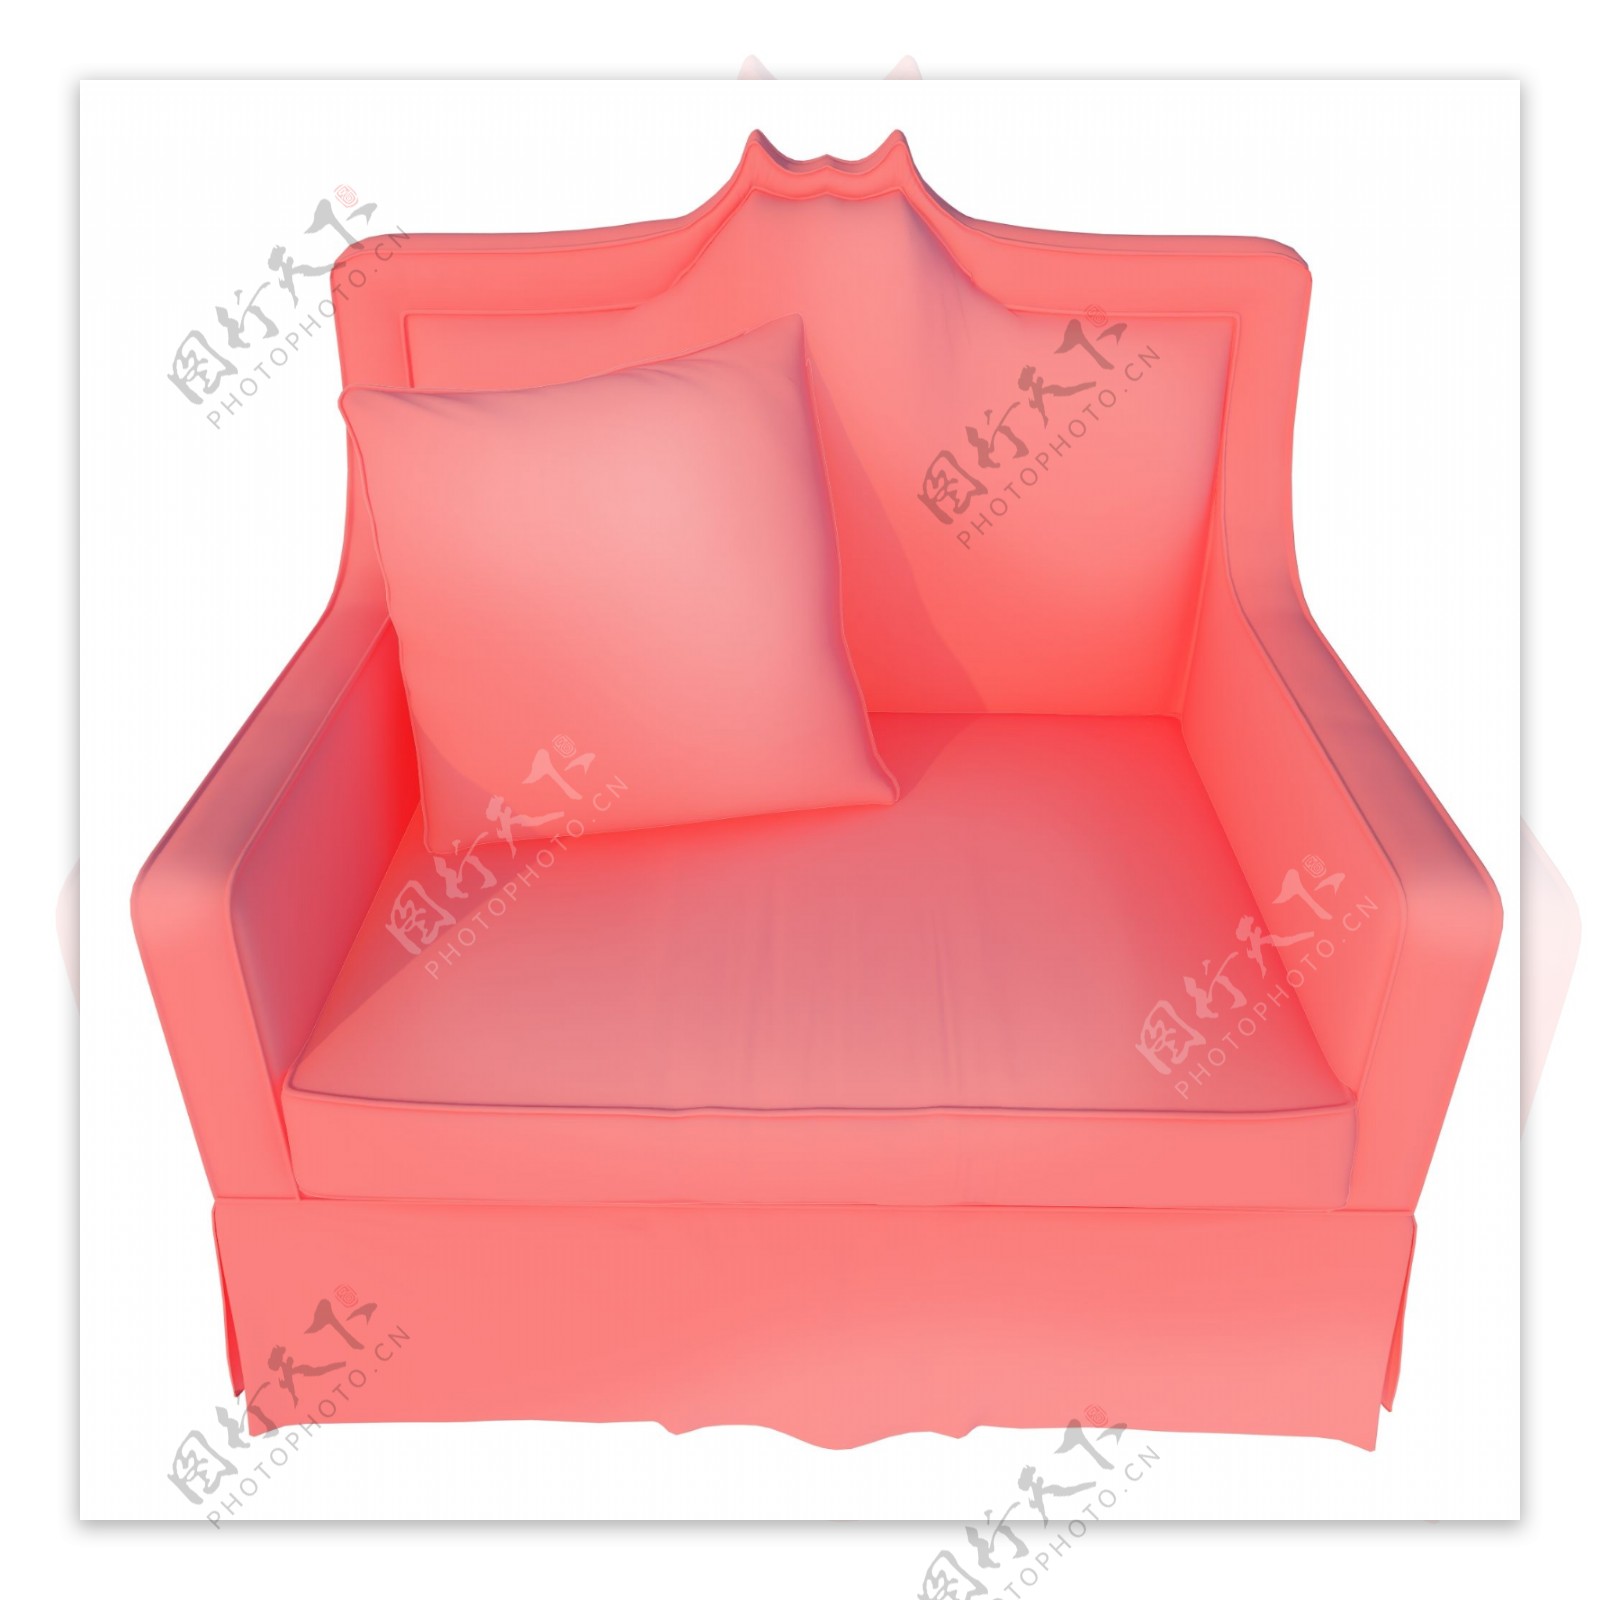 立体粉色单人沙发